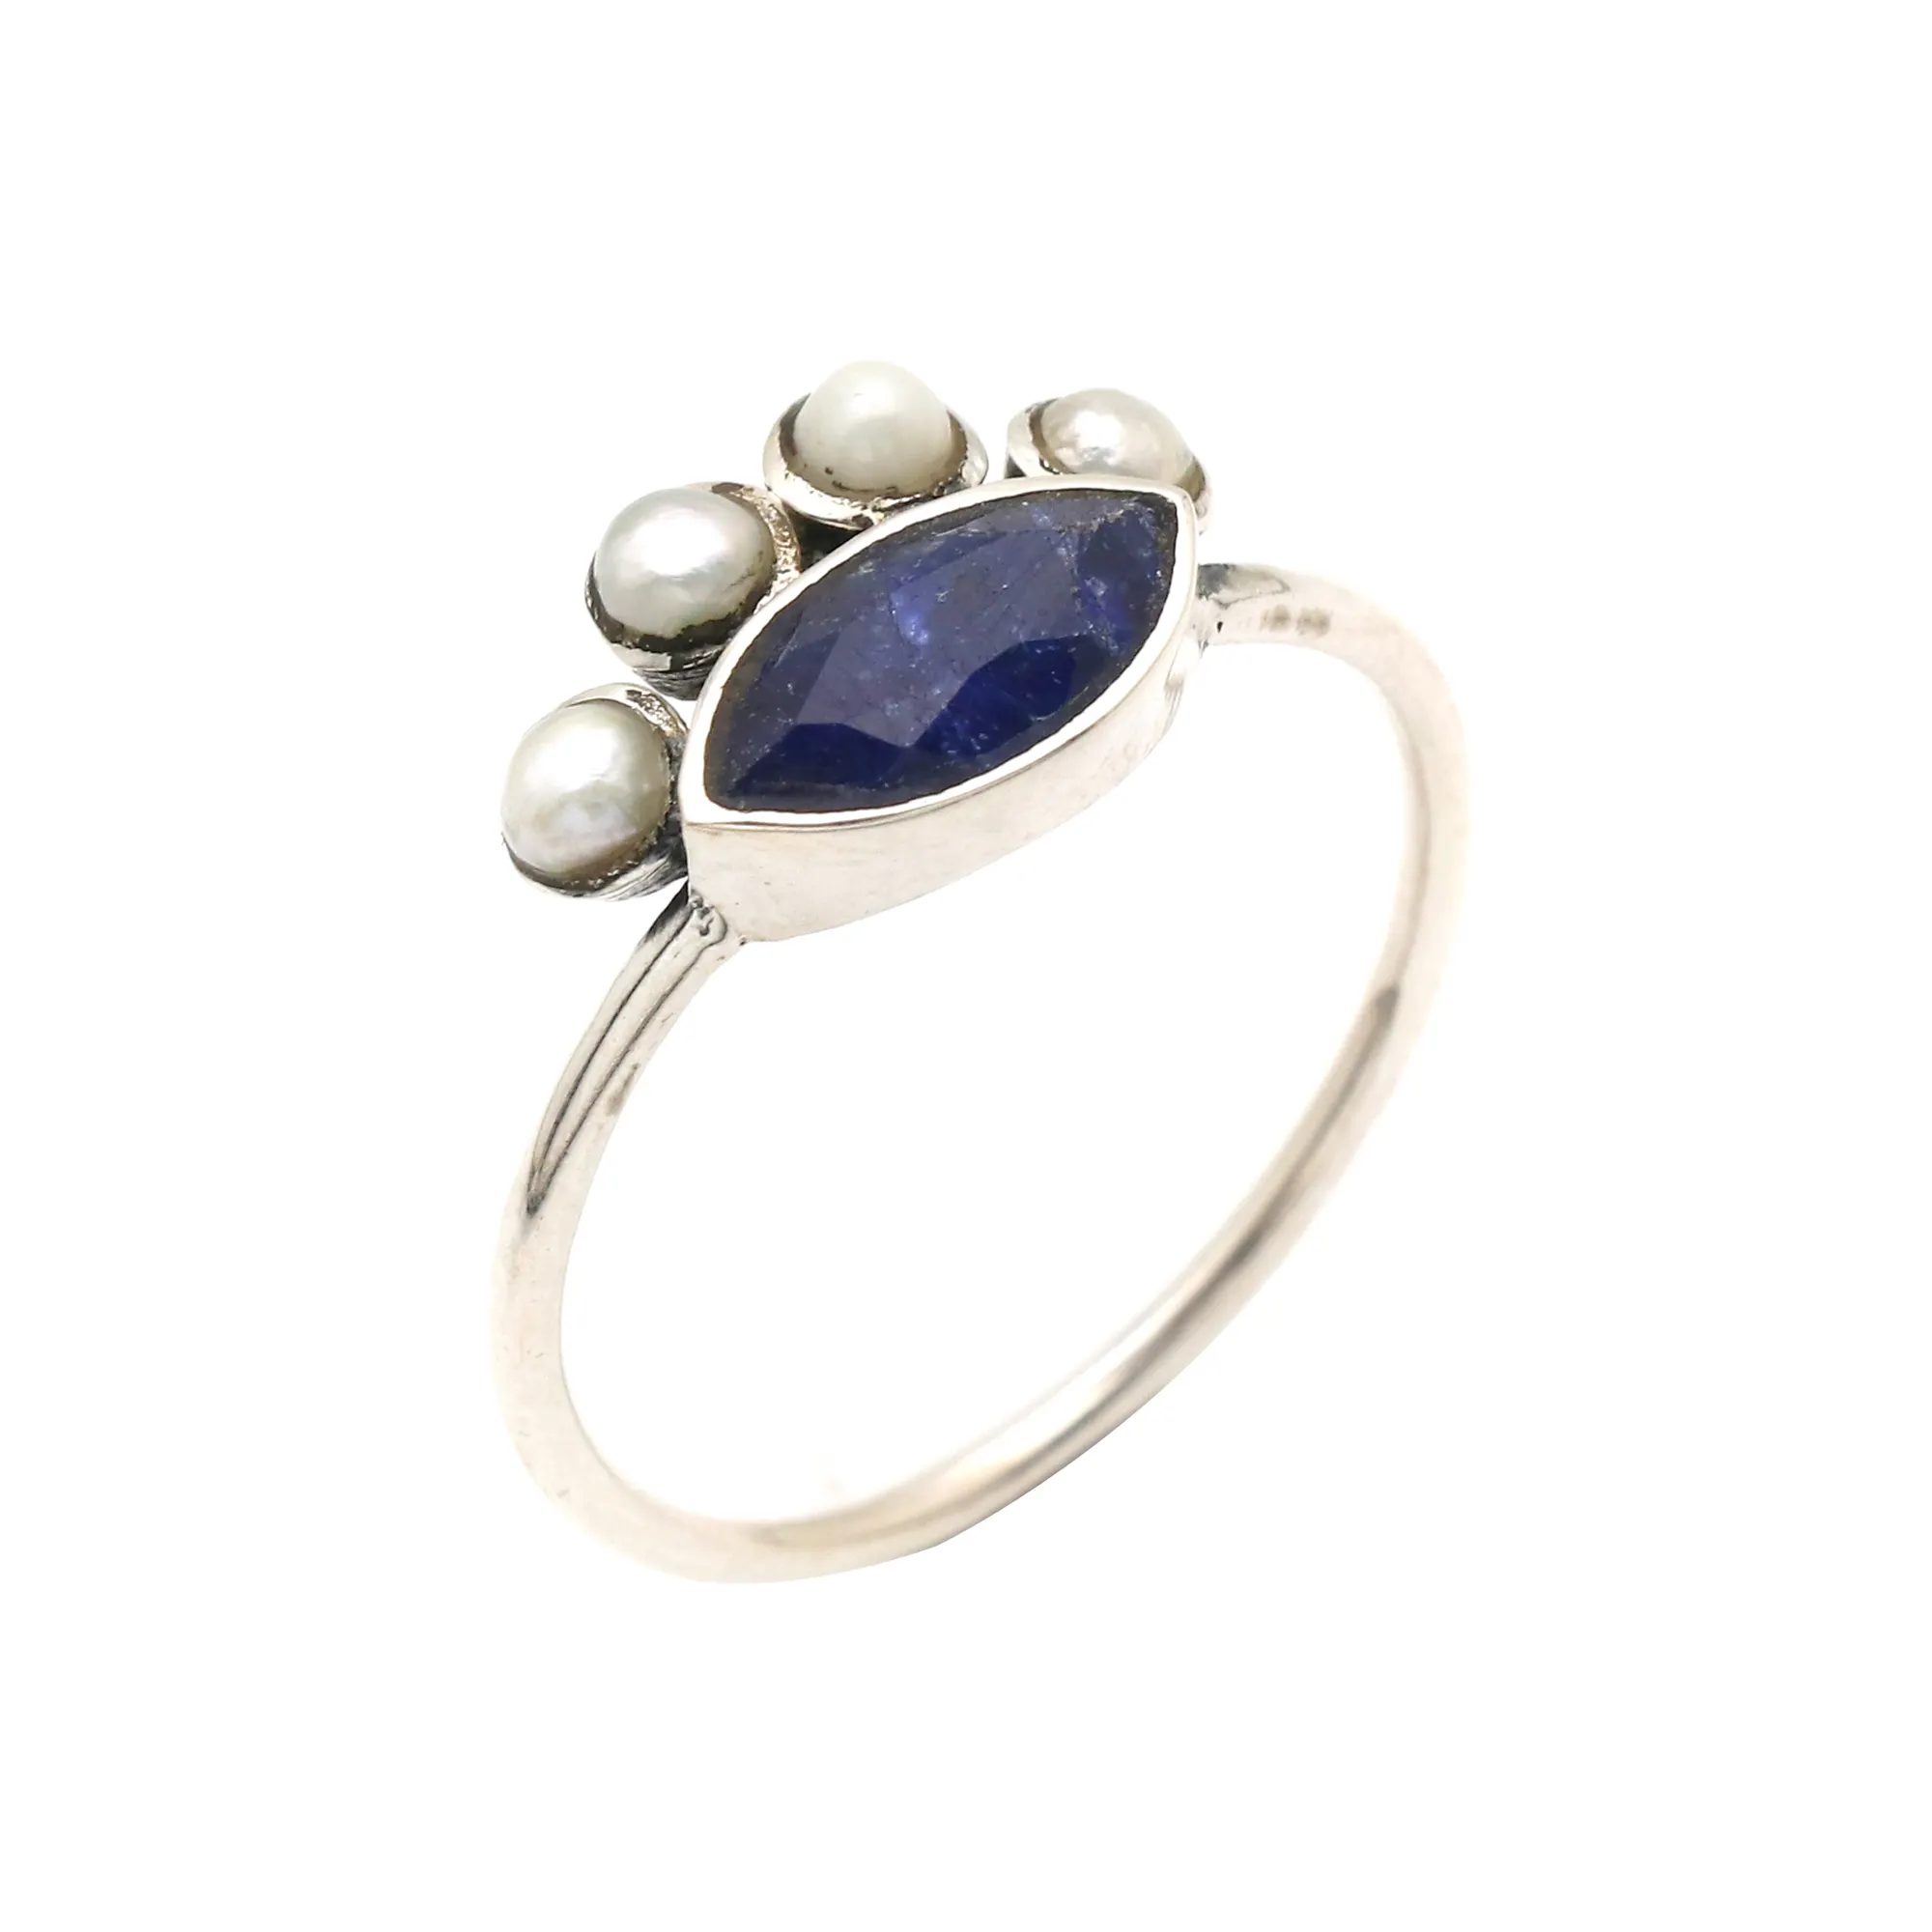 बेहतरीन गुणवत्ता के ब्लू नीलम और मोती 925 स्टर्लिंग चांदी की अंगूठी बुराई की आंख अंगूठी